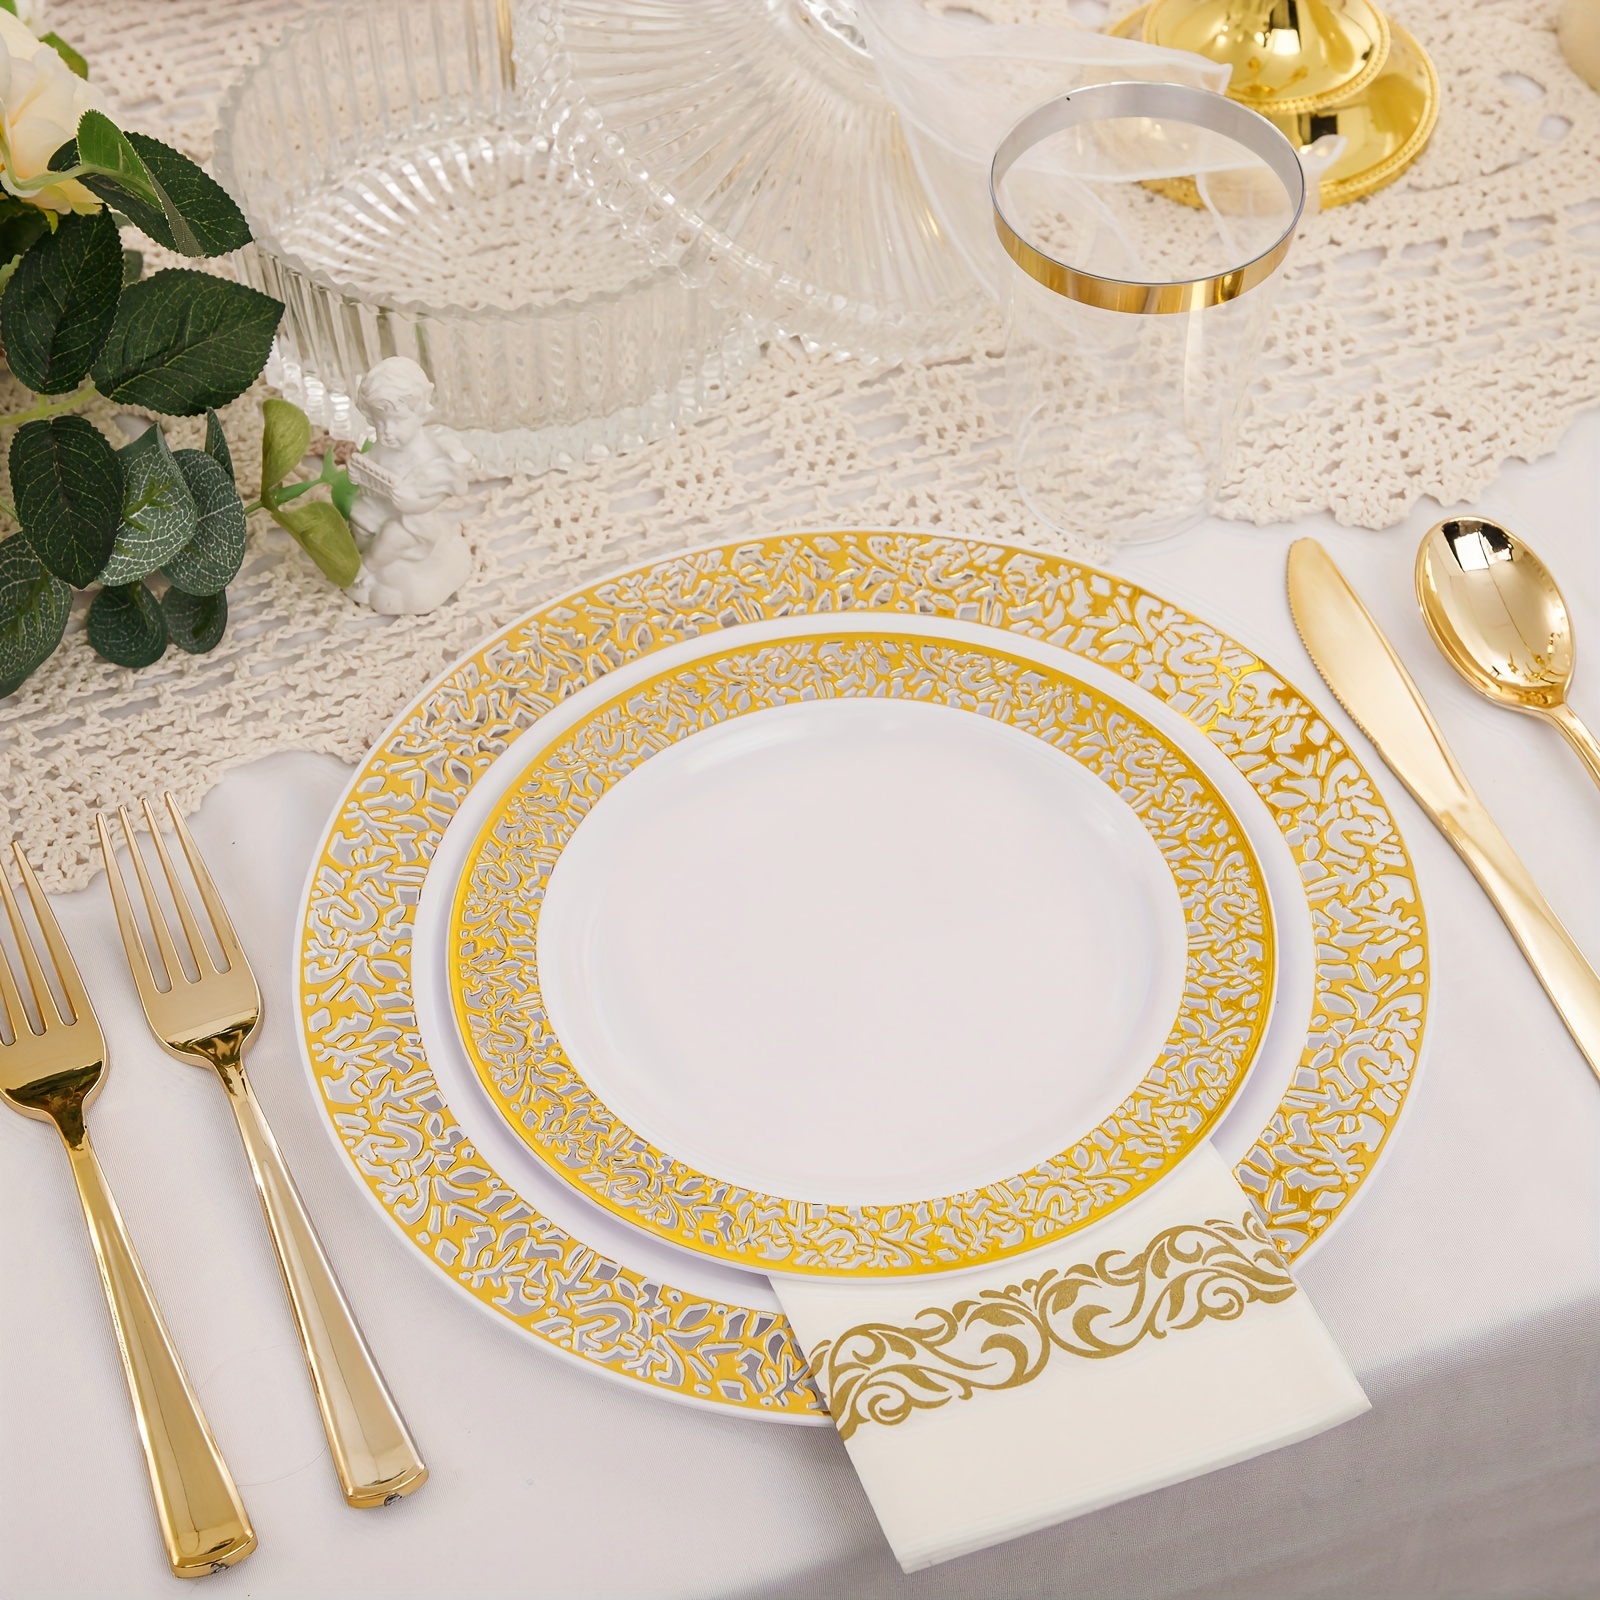 ZLion Juego de 60 platos desechables blancos, elegante vajilla de plástico  para fiestas, bodas, cumpleaños y baby showers, incluye platos principales